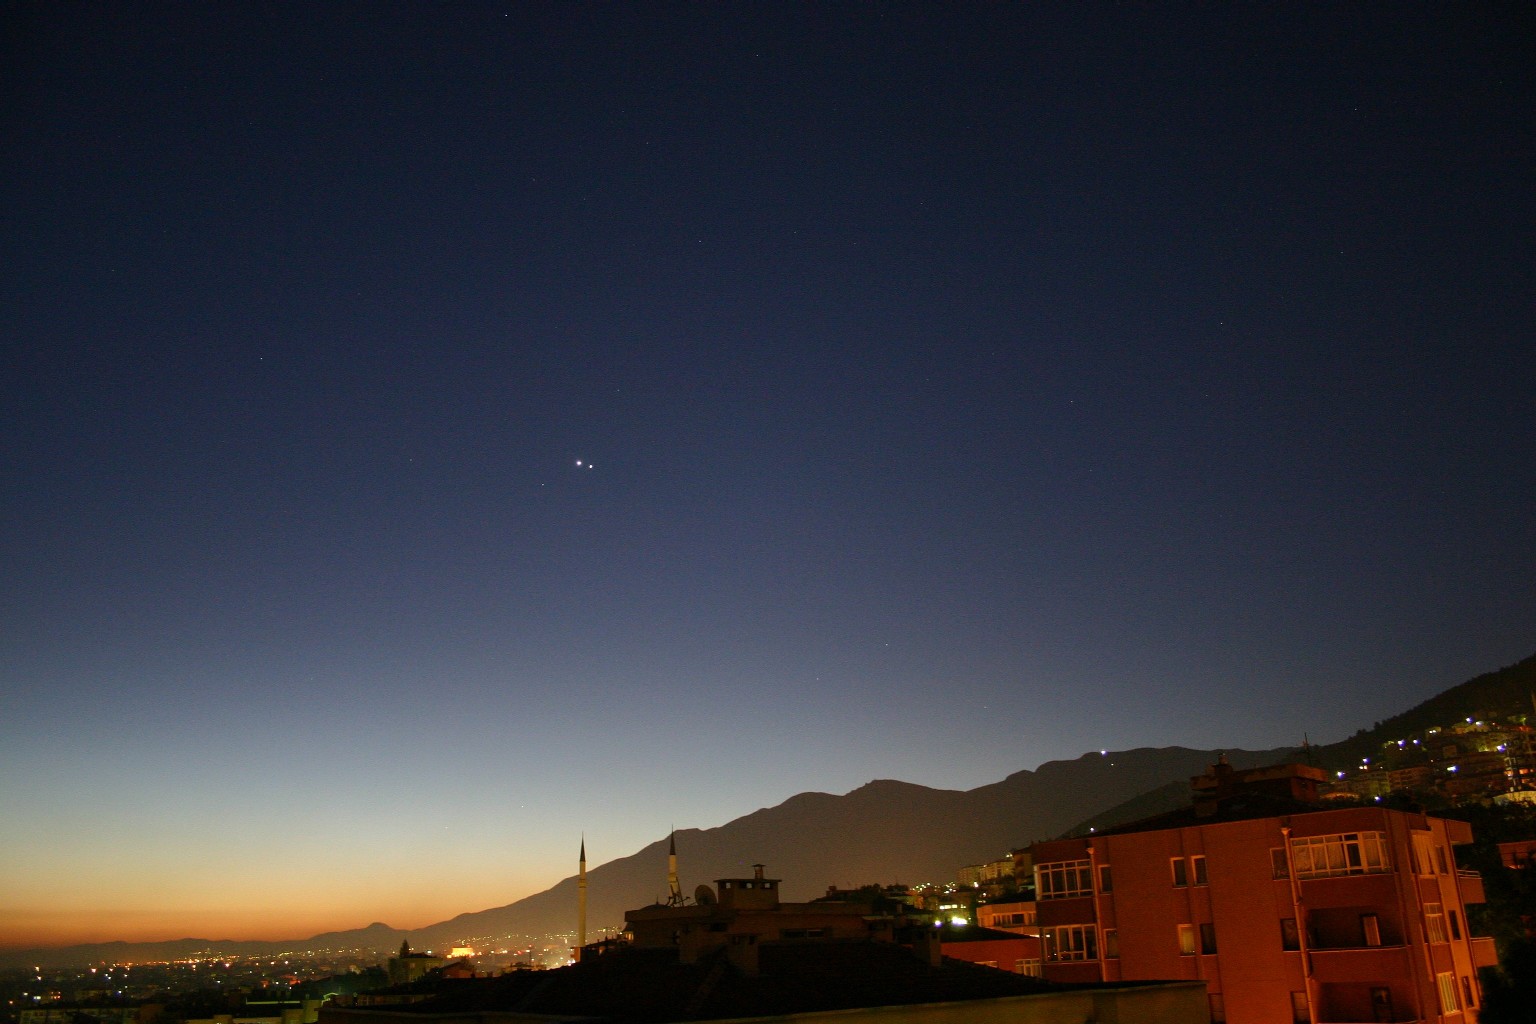 Венера звезда на небе фото